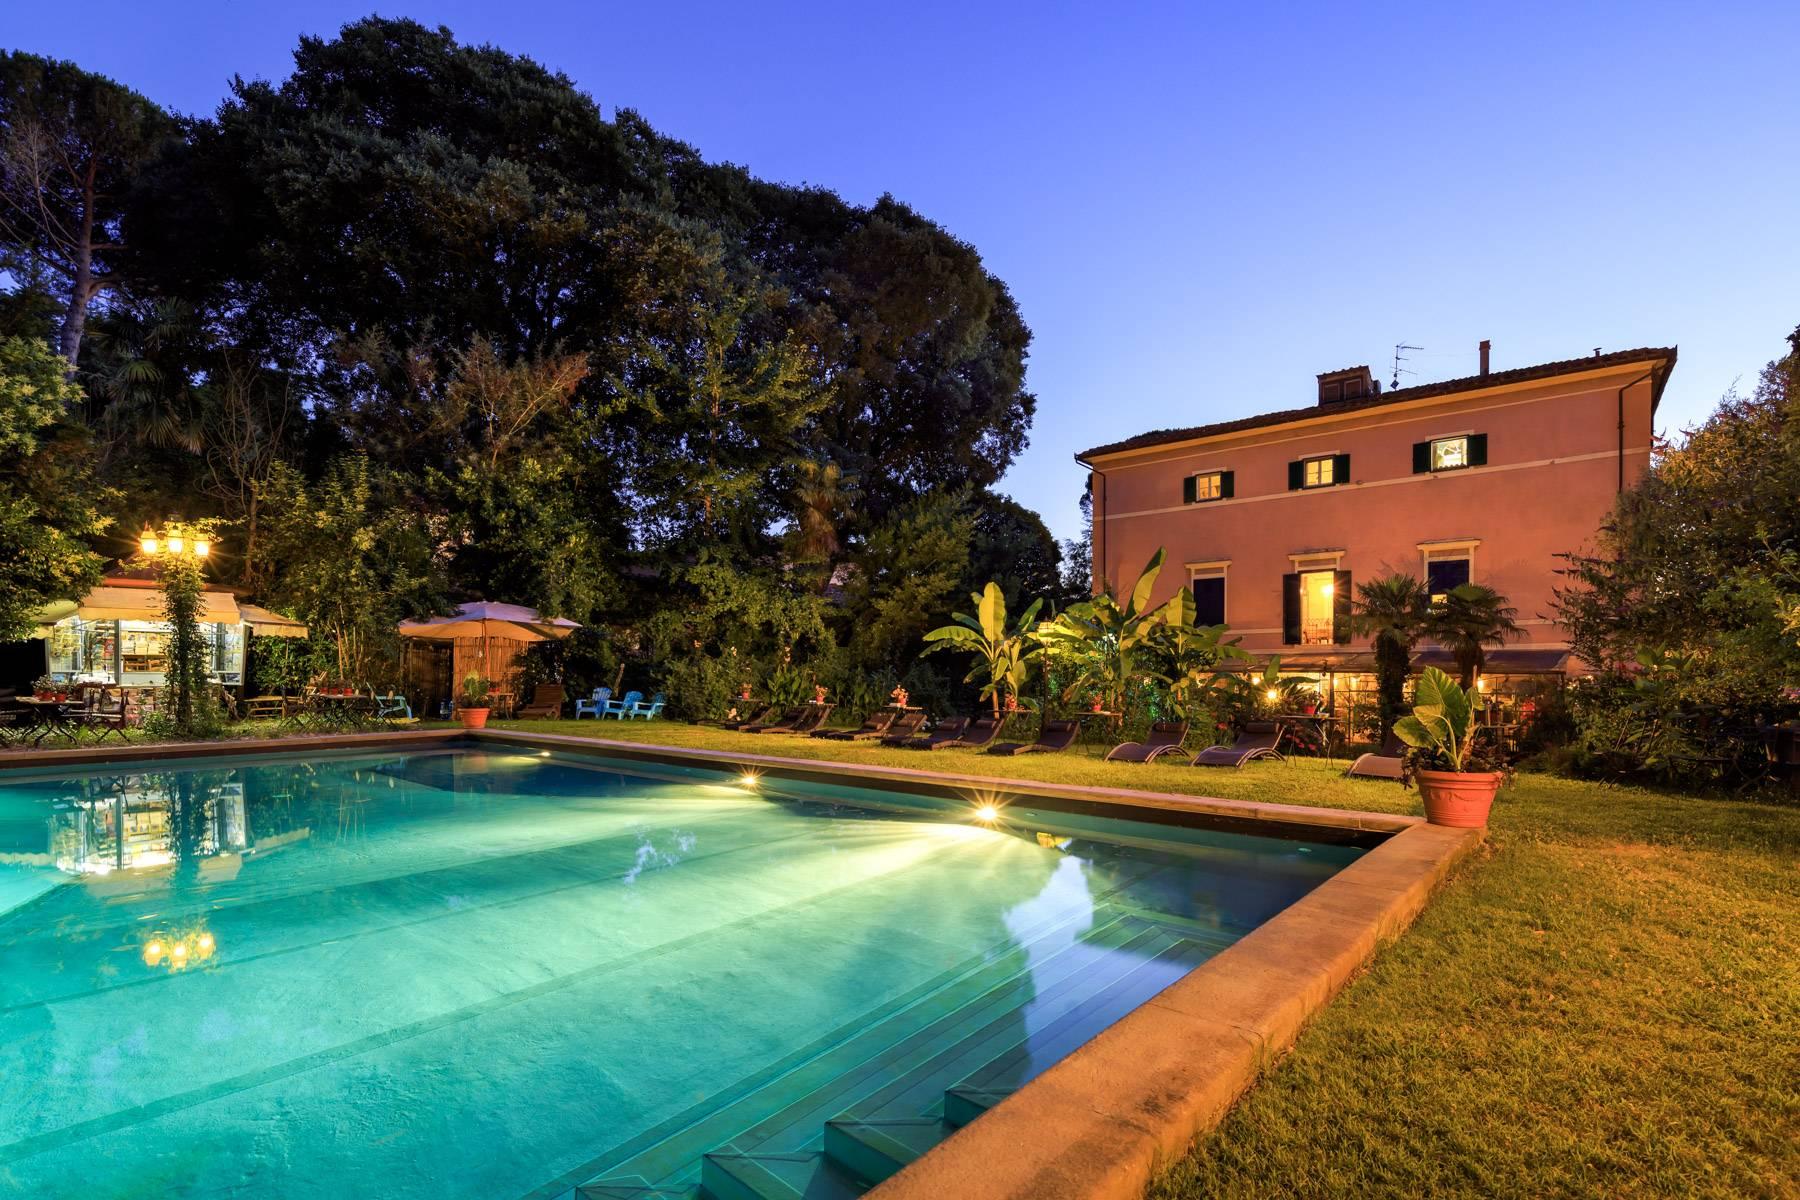 Romantic villa for sale in Pisa - 1